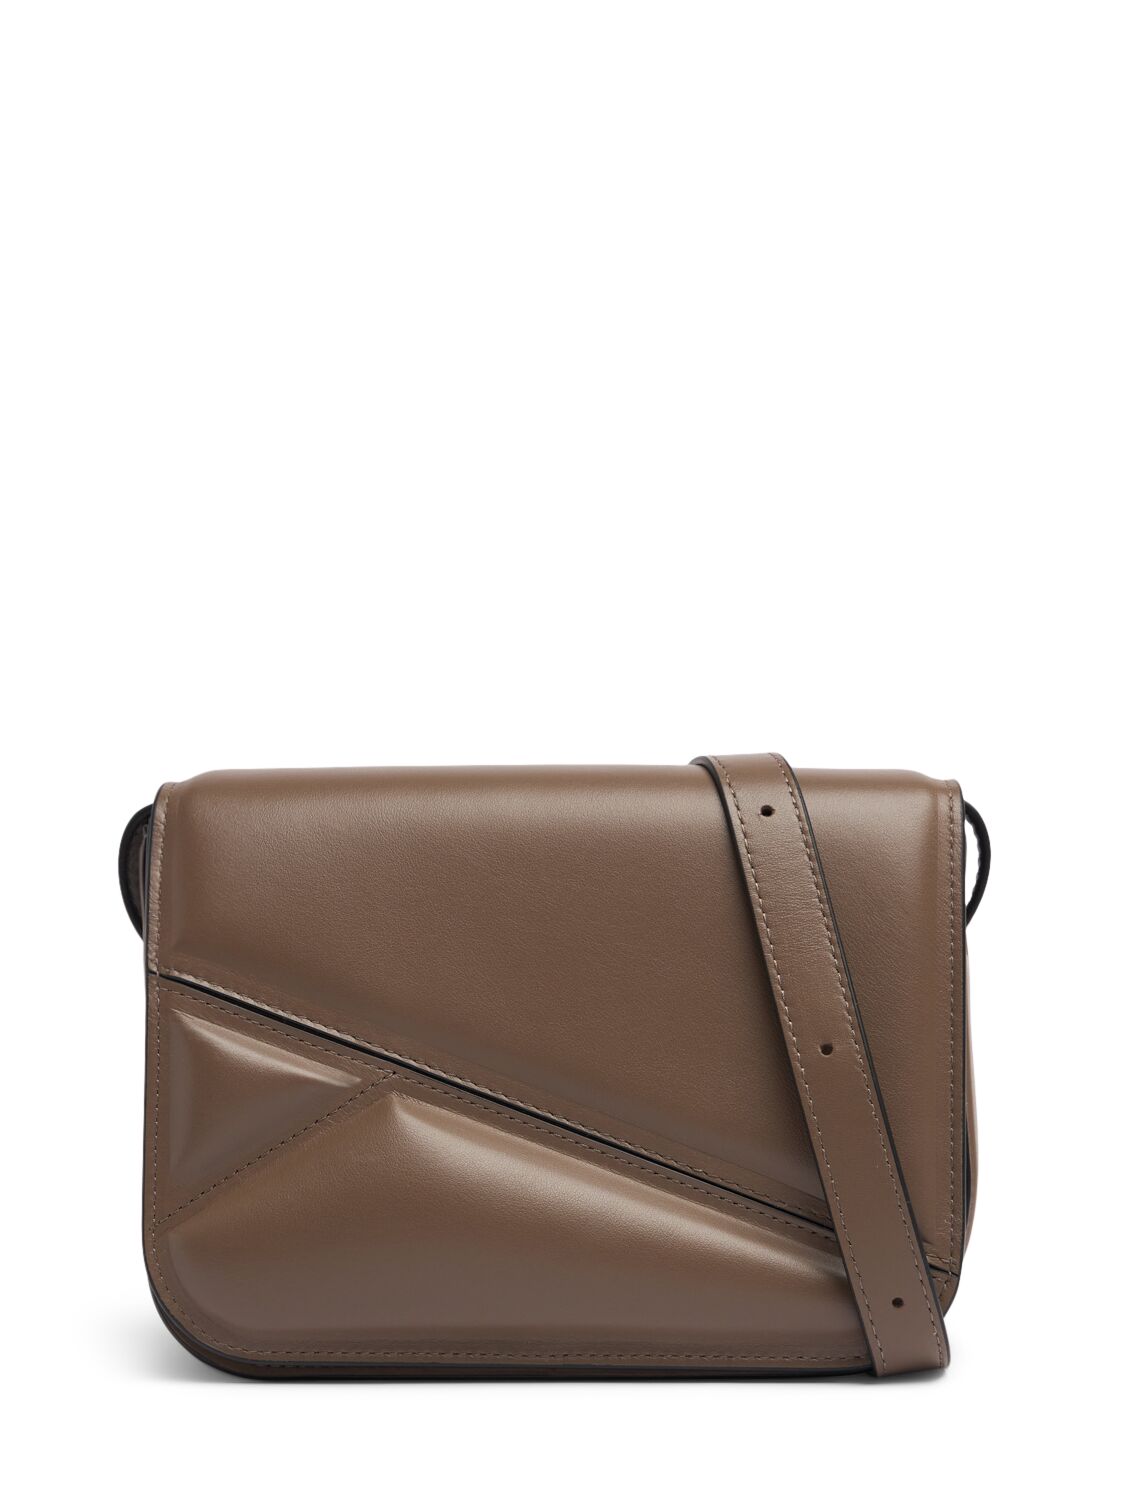 Wandler Medium Oscar Trunk Leather Shoulder Bag In Brown